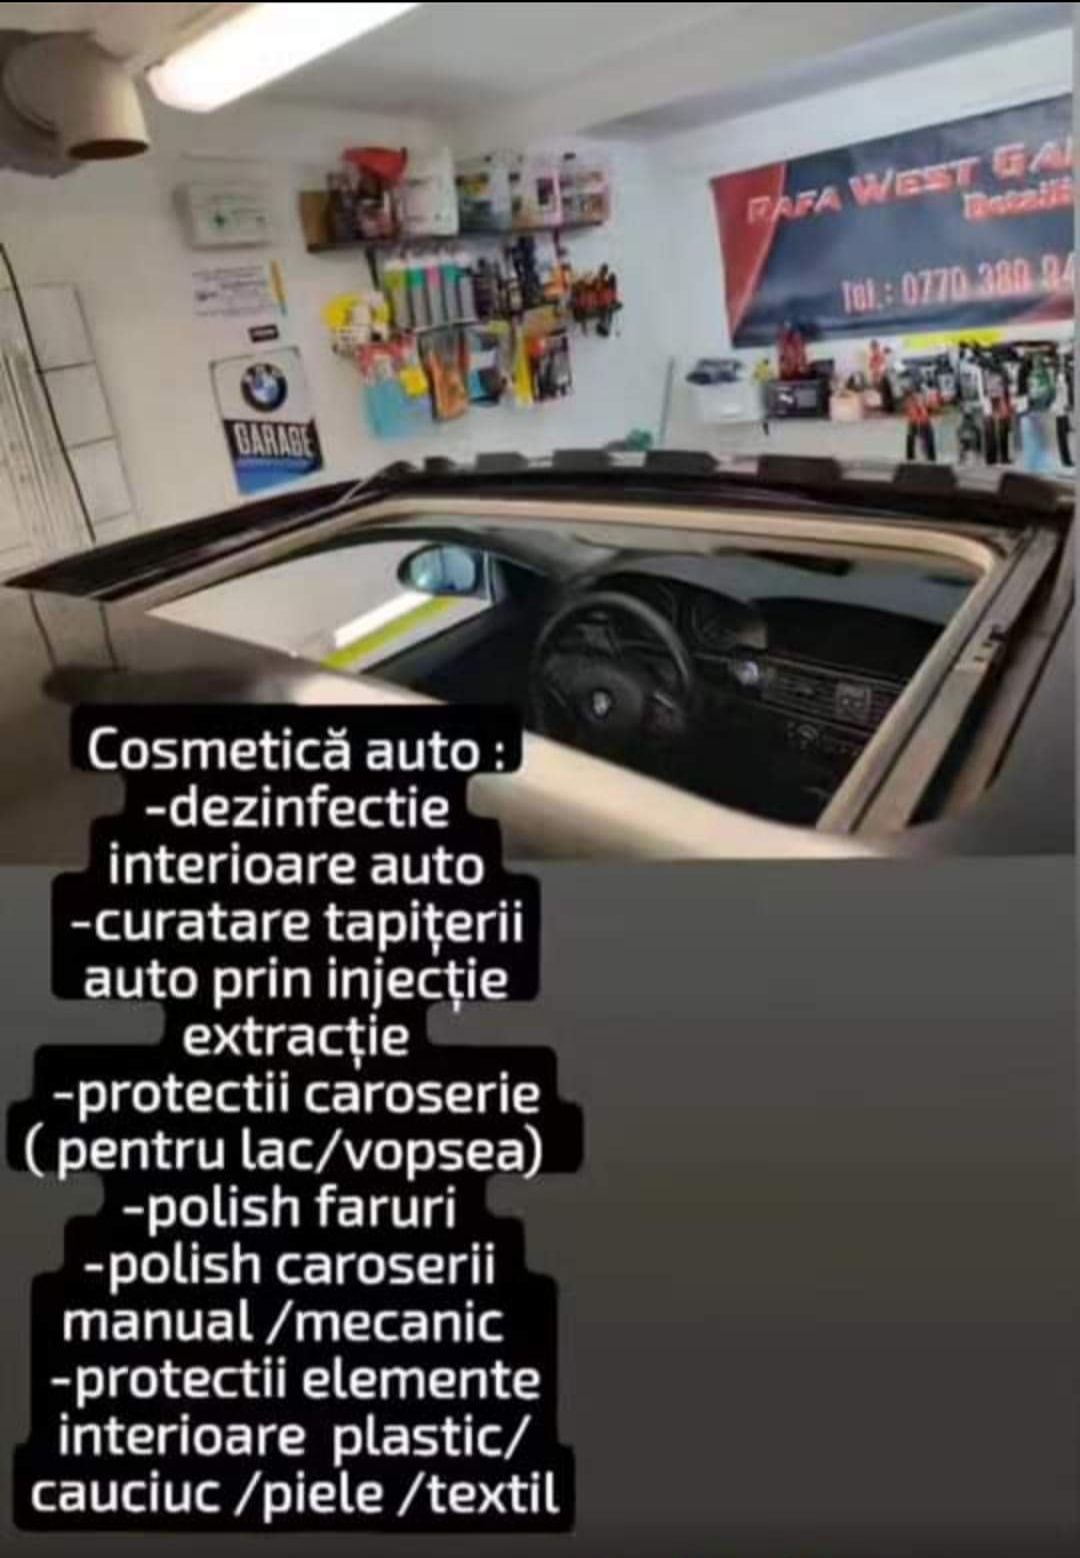 Polish faruri /caroserie /curățare  profesionala  interioare  auto.